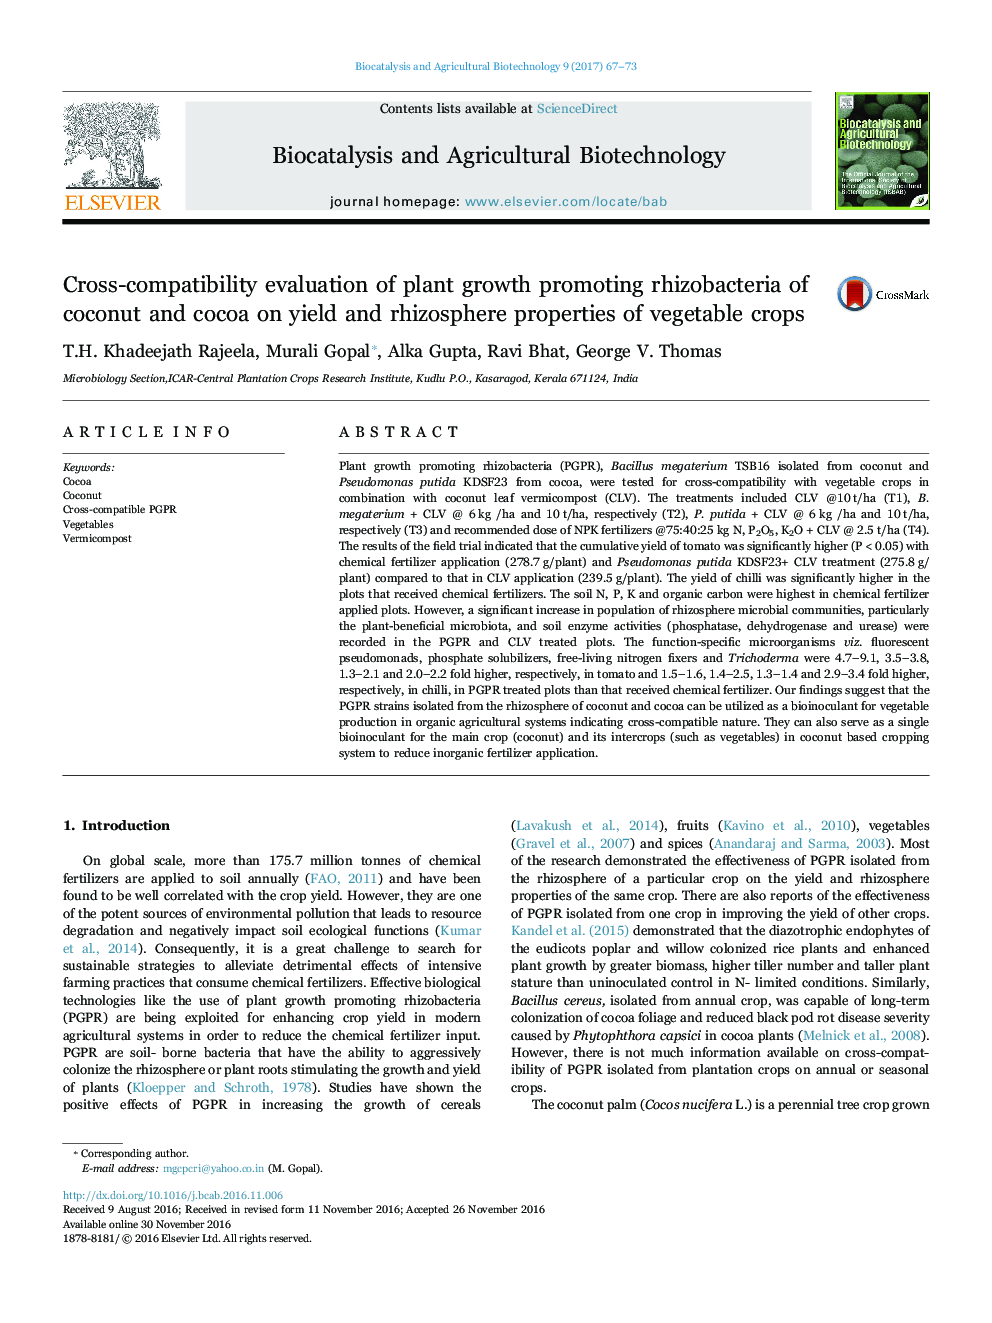 ارزیابی سازگاری صلیب از رشد ریزوباکتری های تکثیر شده گیاه نارگیل و کاکائو بر عملکرد و خواص ریزوسفر محصولات گیاهی 